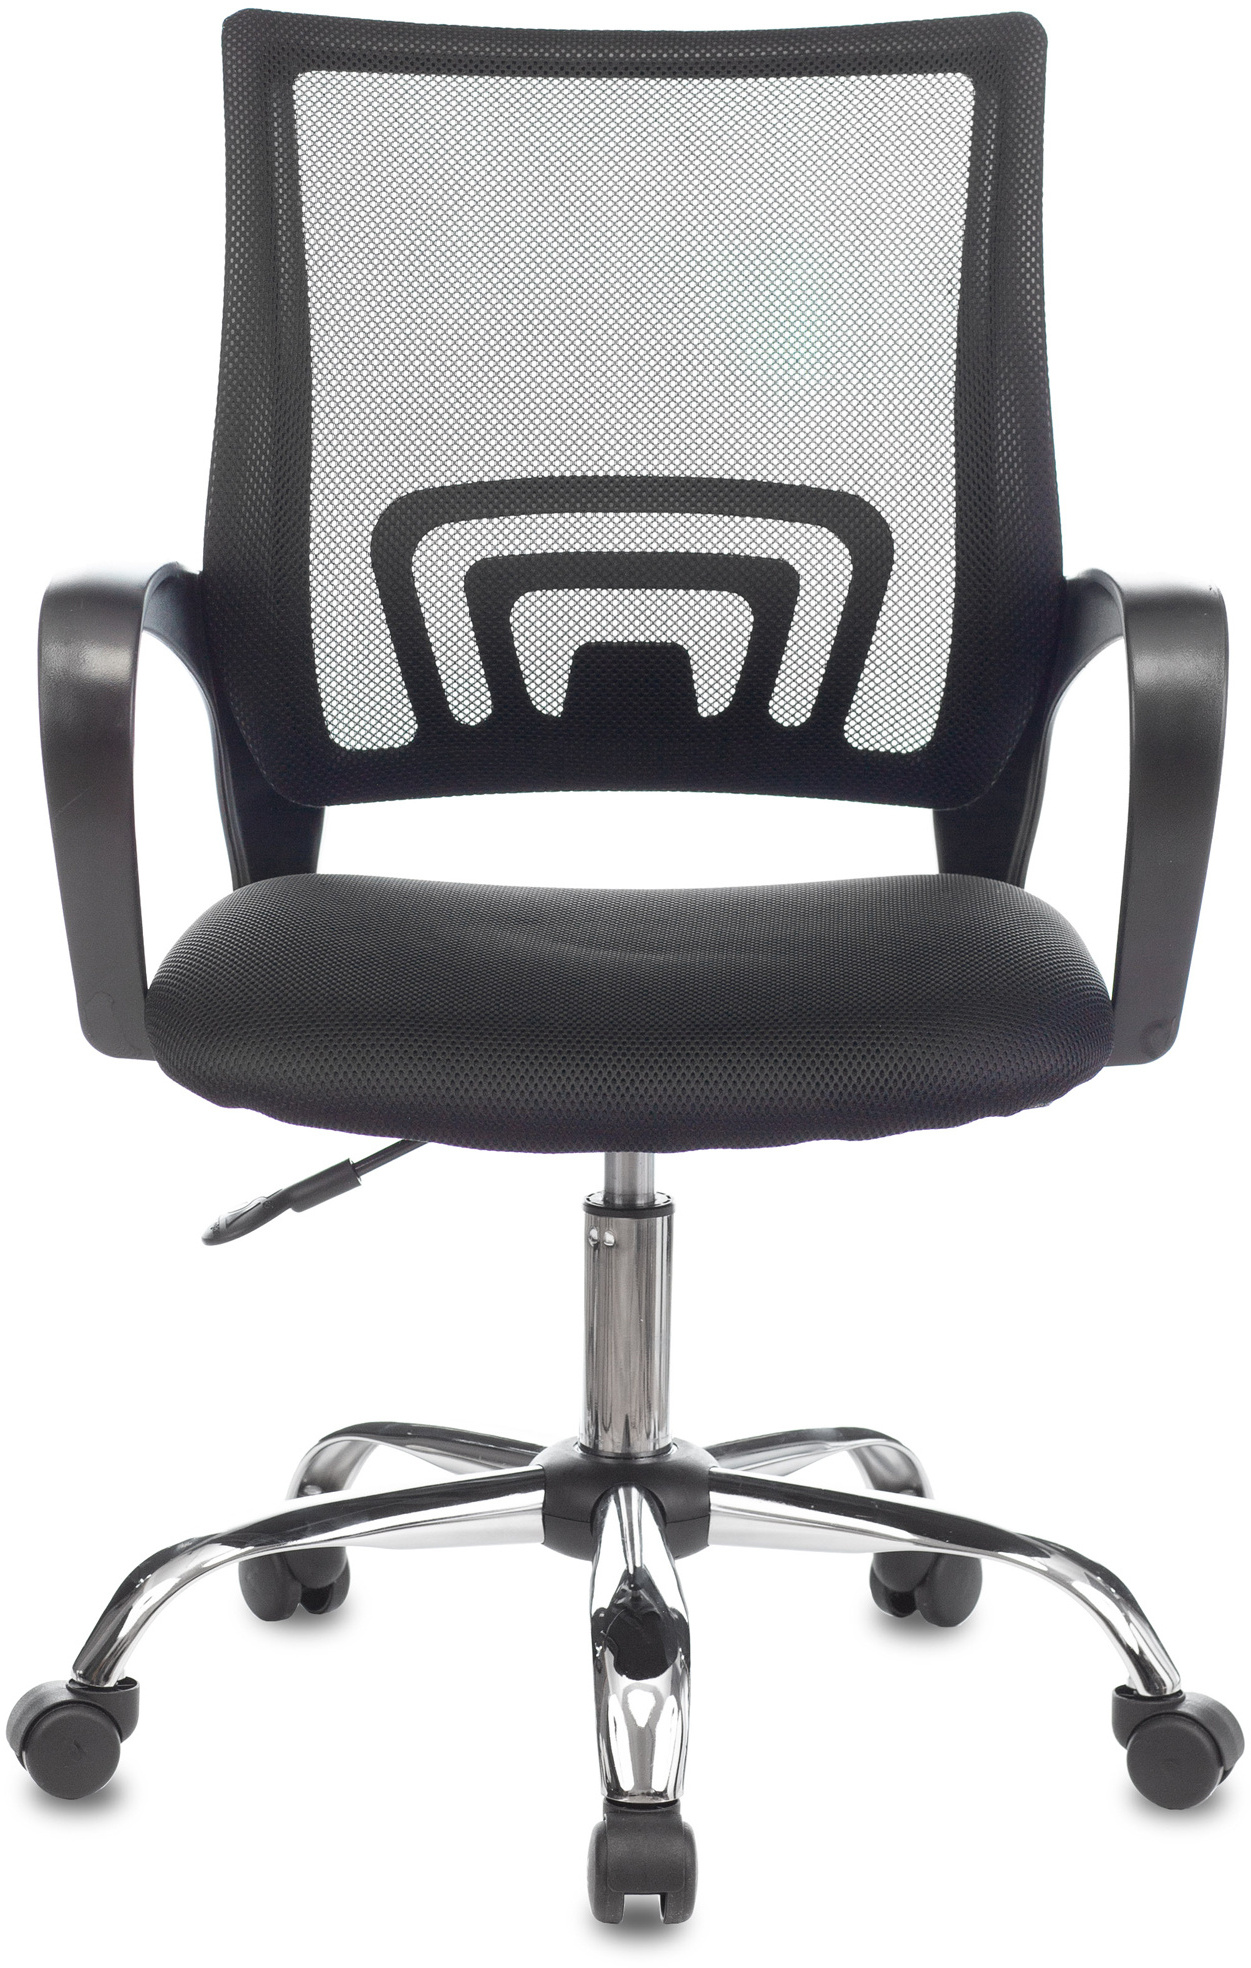 Ch 695nlt black кресло спинка сетка черный tw 01 сиденье черный tw 11